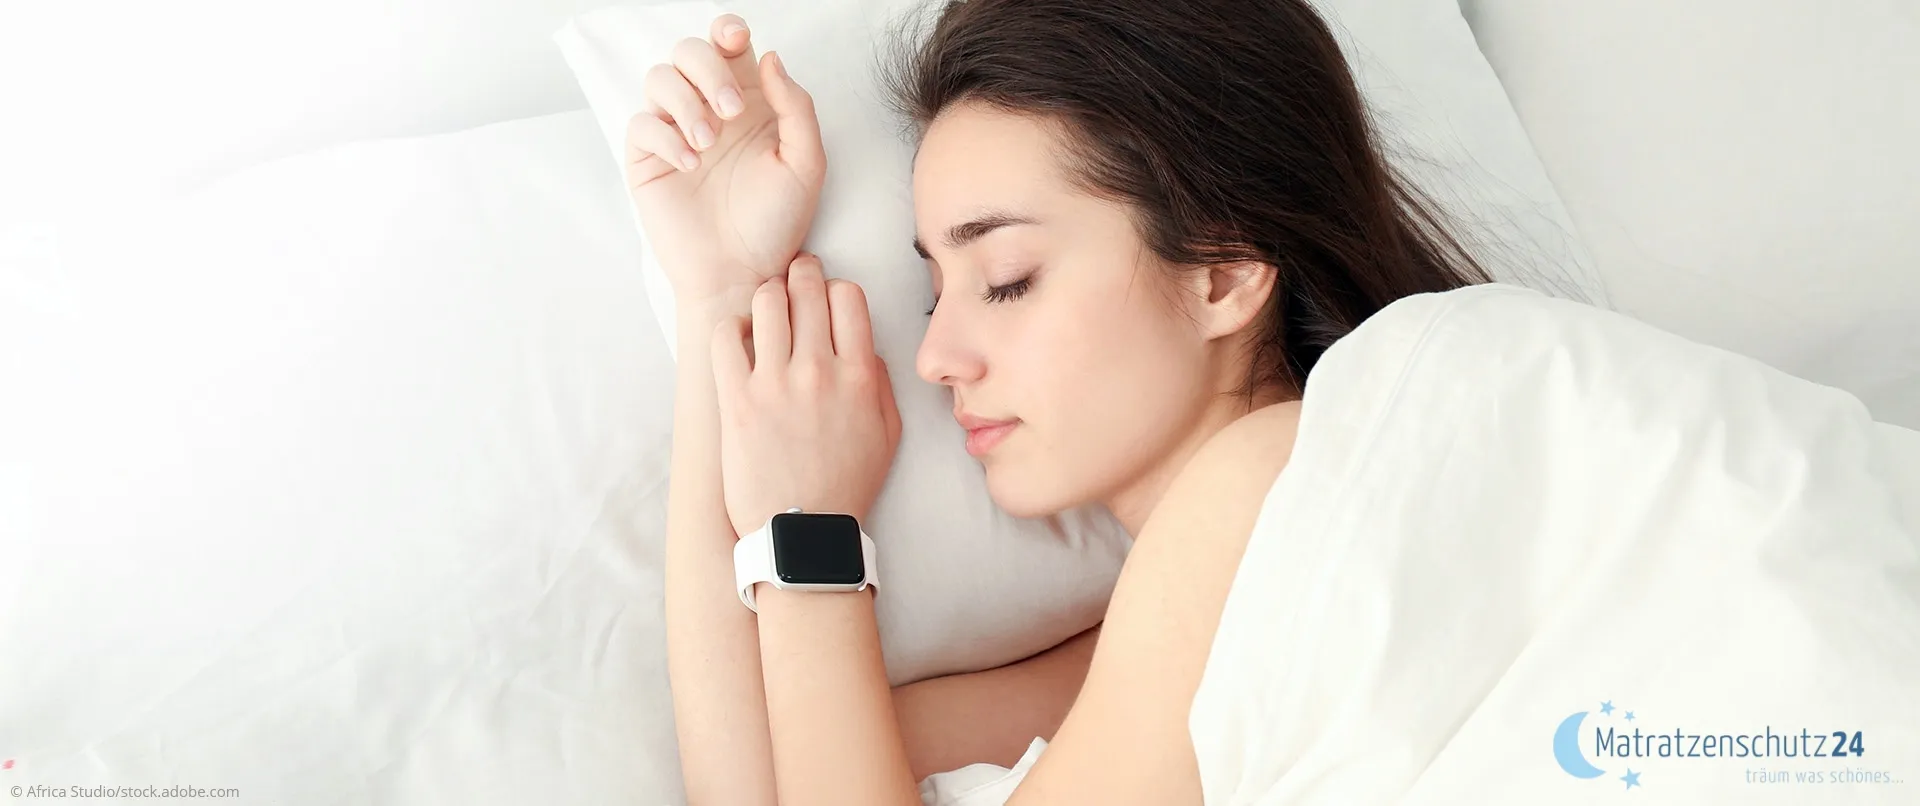 Bester Schlaftracker im Test - Top10 Smartwatch, Armband, Ring & Co. zur Schlafüberwachung